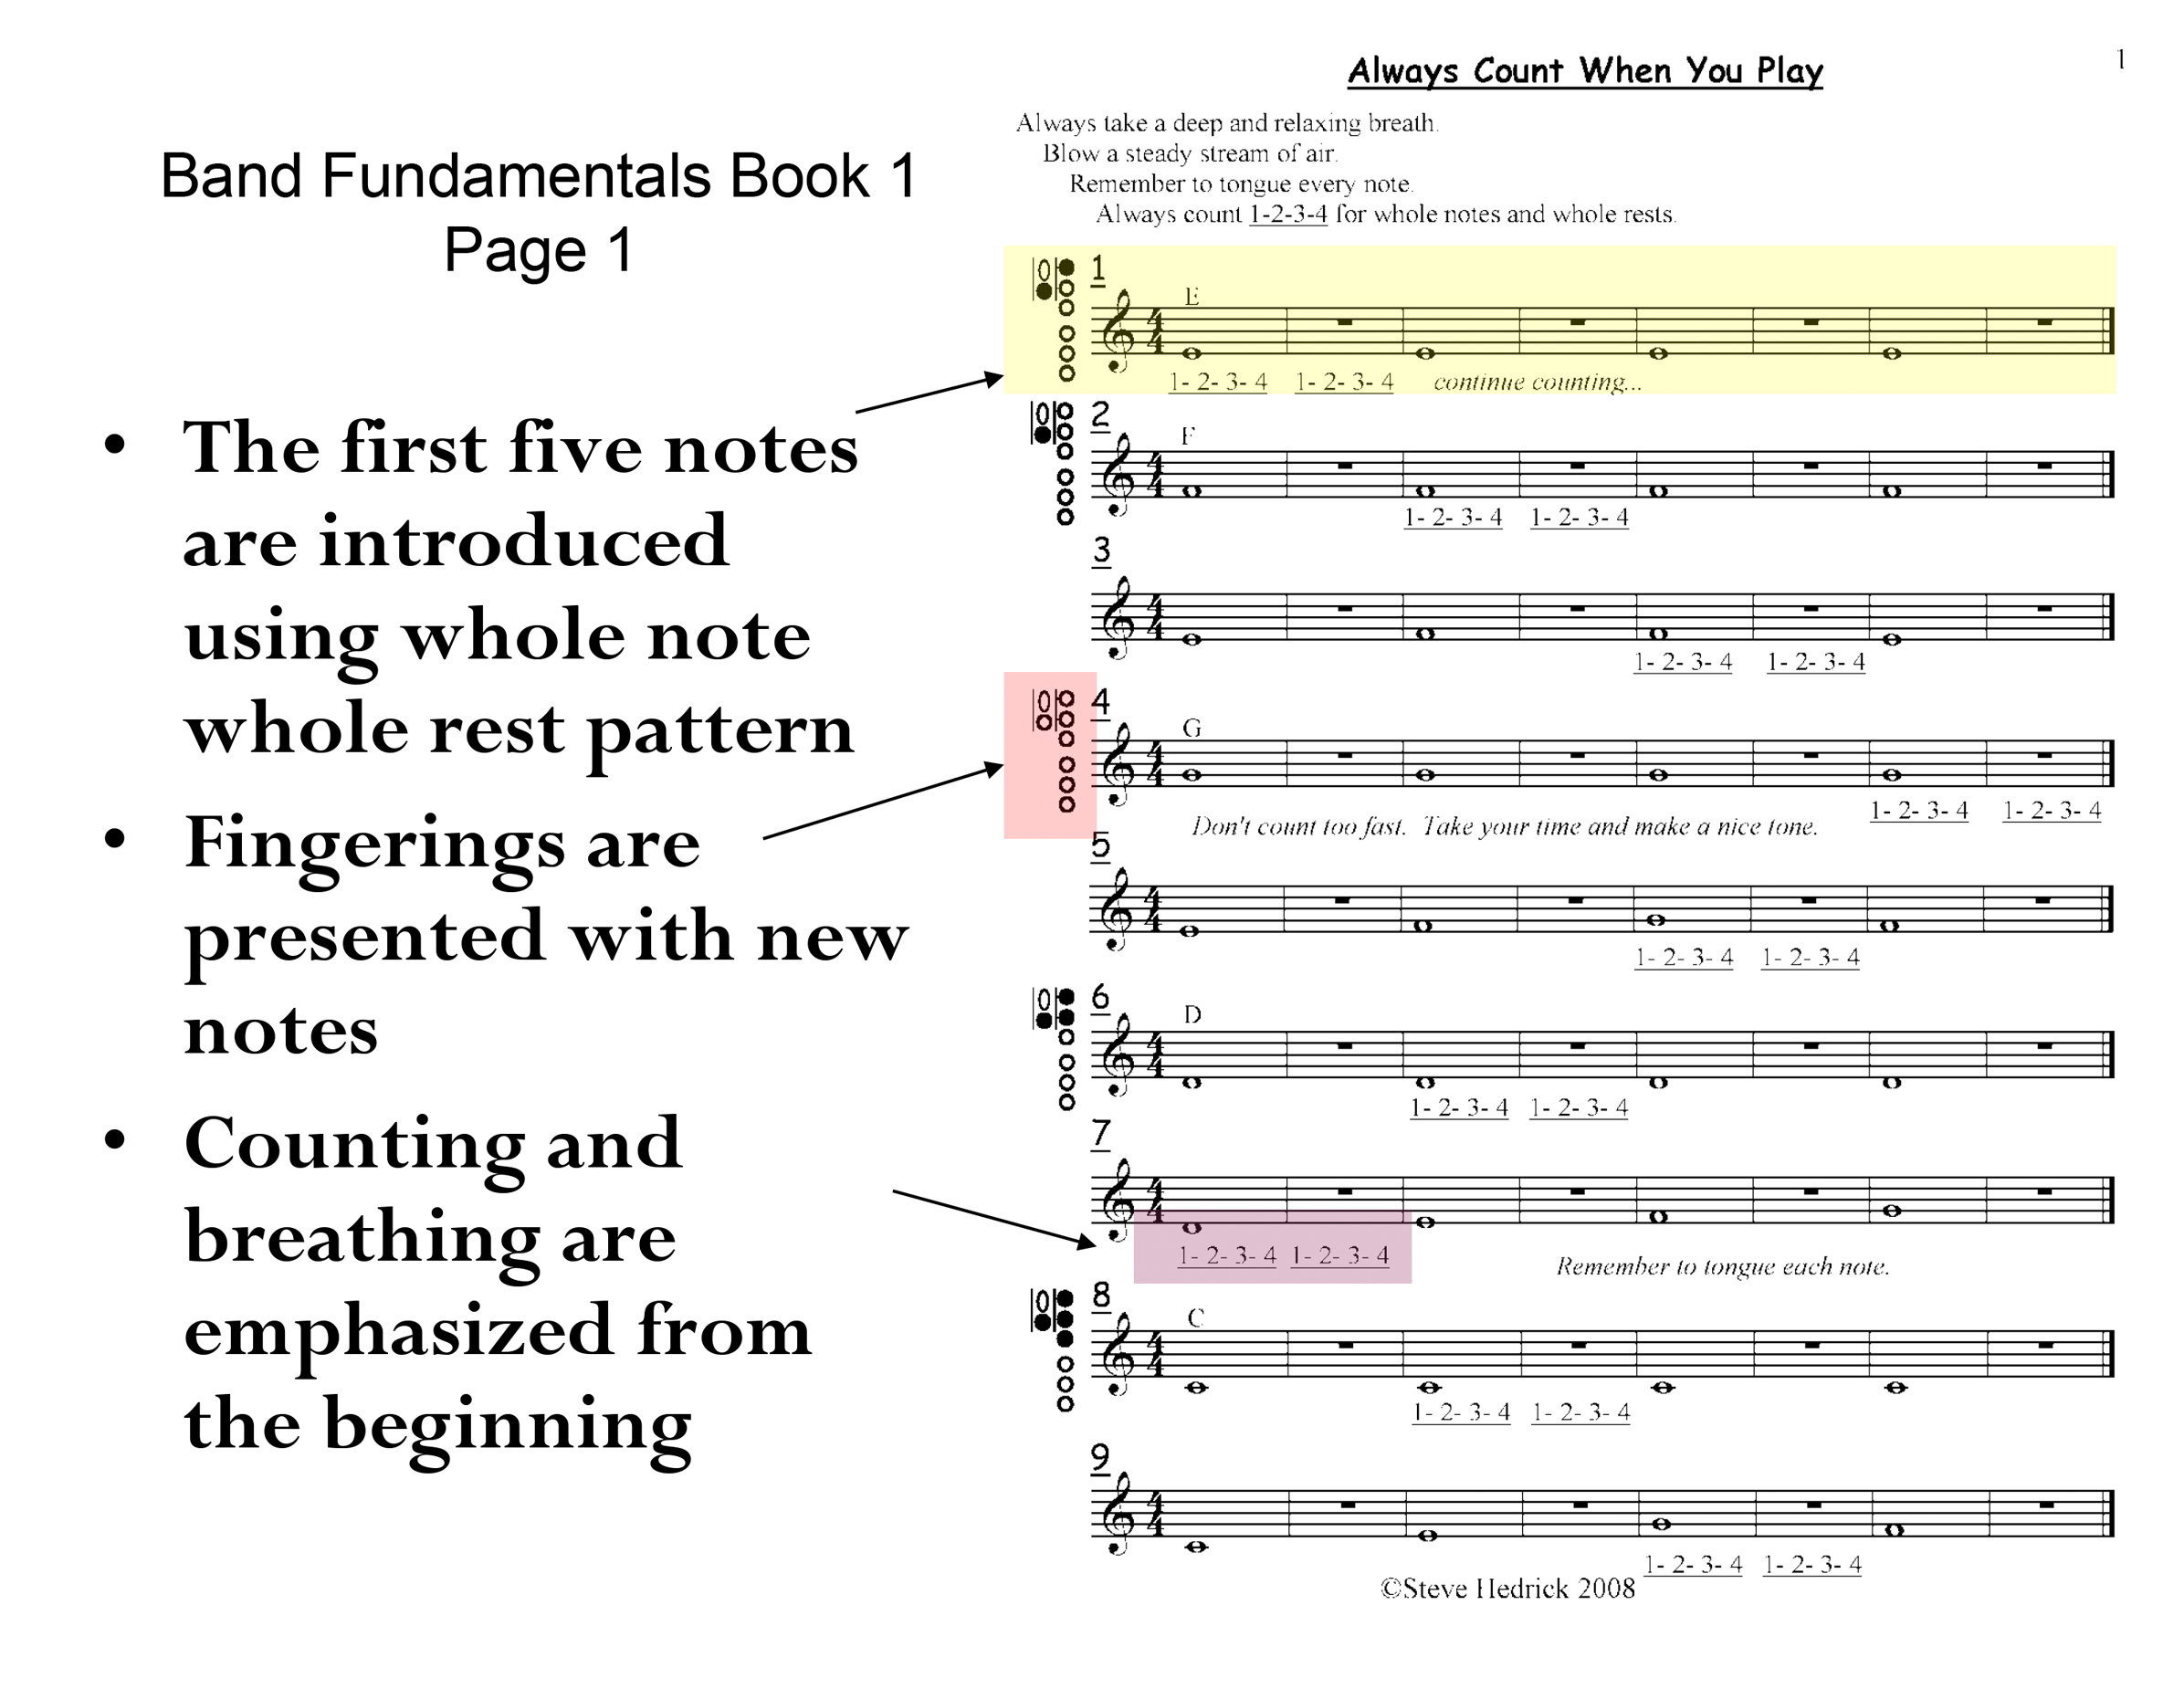 Band Fundamentals Book 1 Sample Page